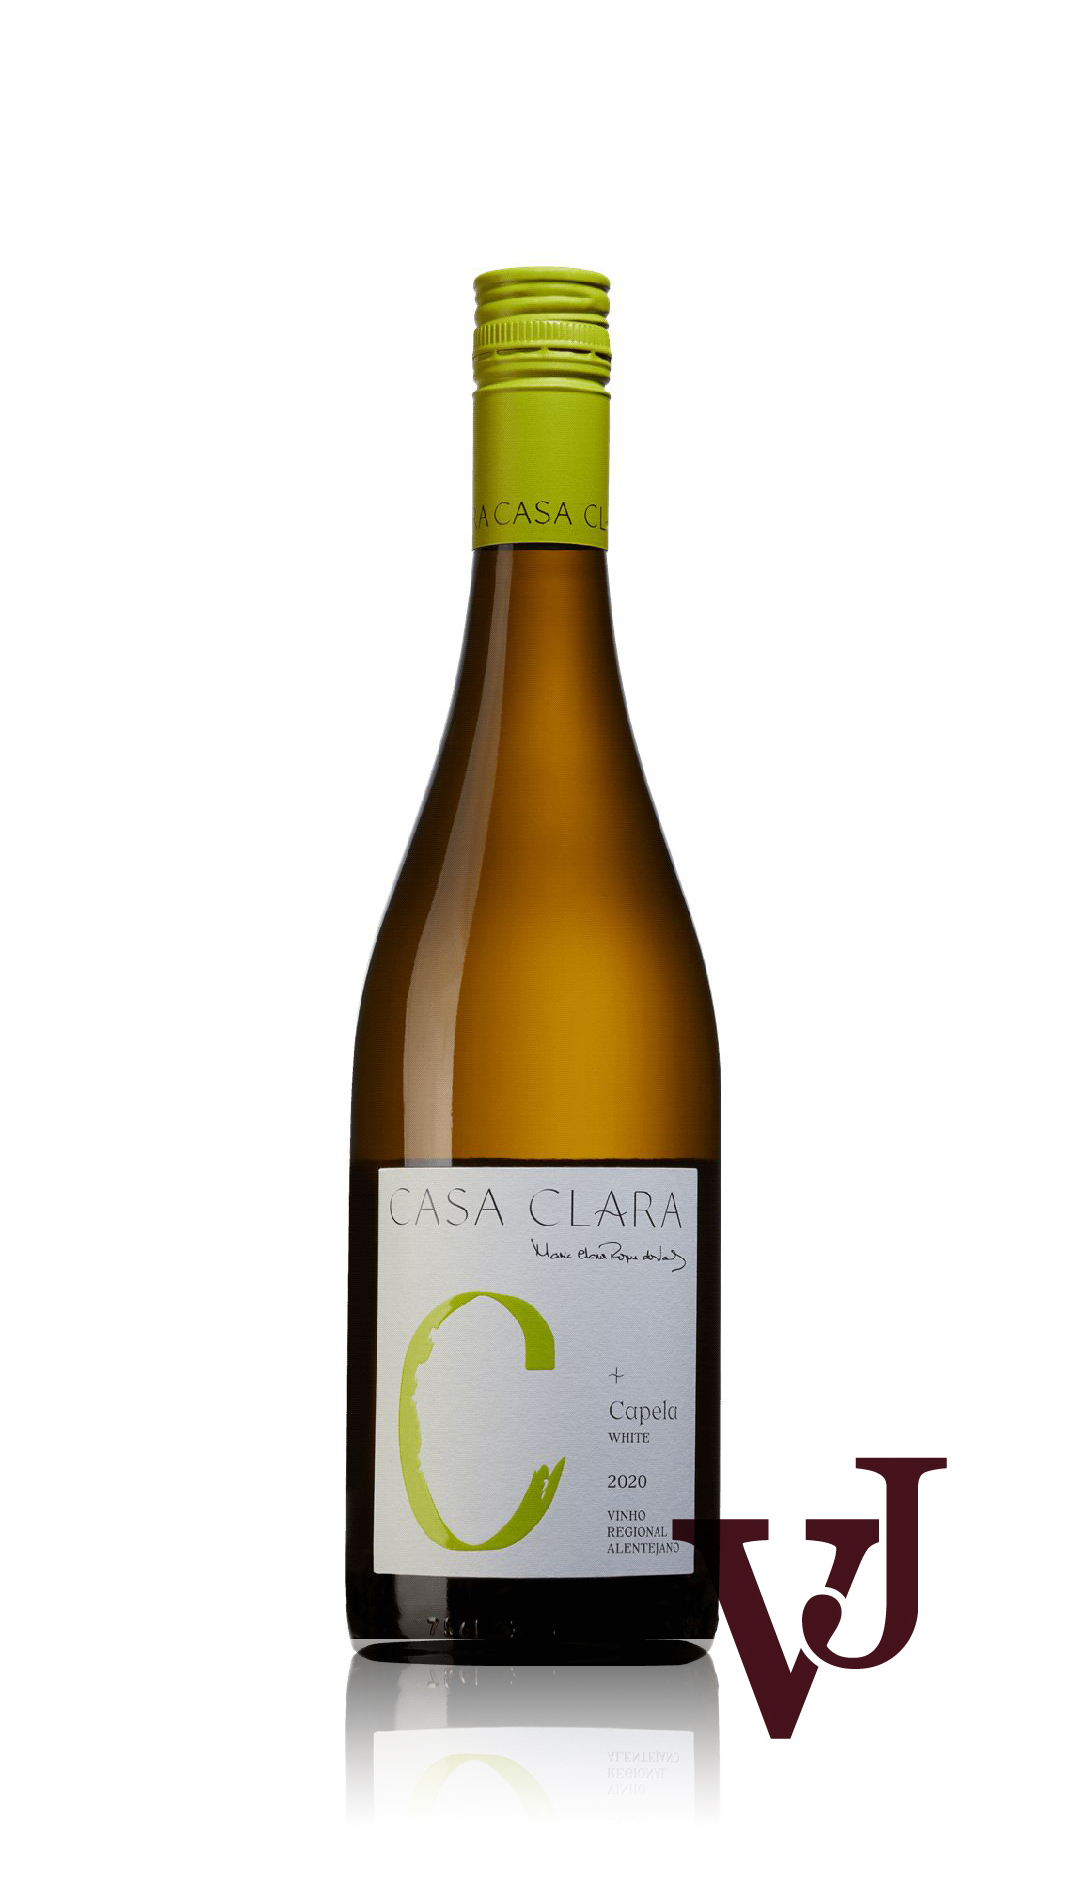 Vitt Vin - Casa Clara Capela 2020 artikel nummer 212401 från producenten Casa Clara från området Portugal